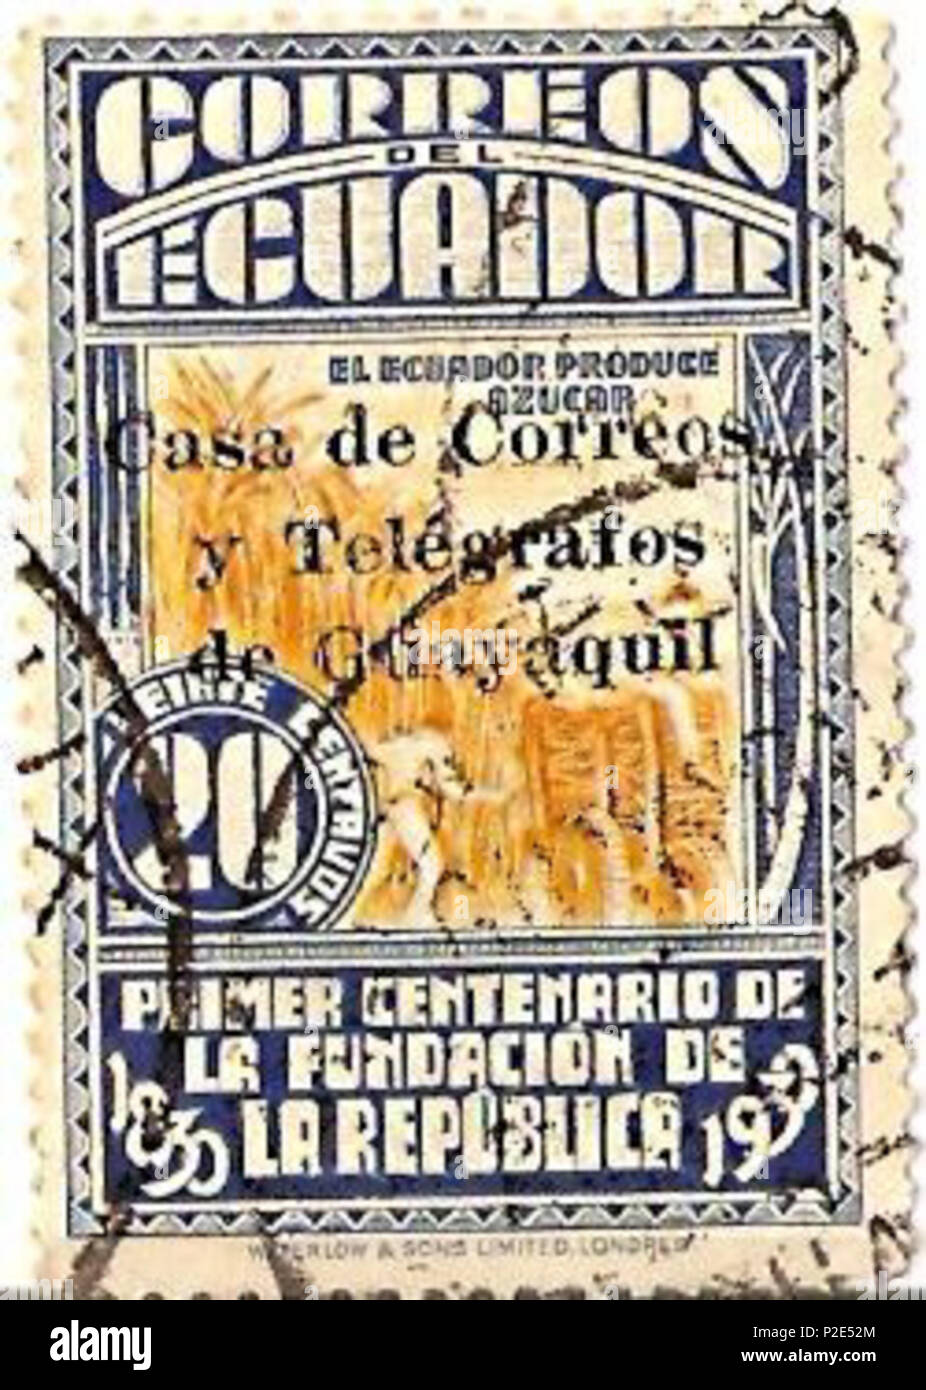 . Inglese: Timbro da Ecuator (1930). Español: Sello postal de Ecuador (1930). 1930. Utente:Taichi 17 Ecuador estampilla 1930 Foto Stock